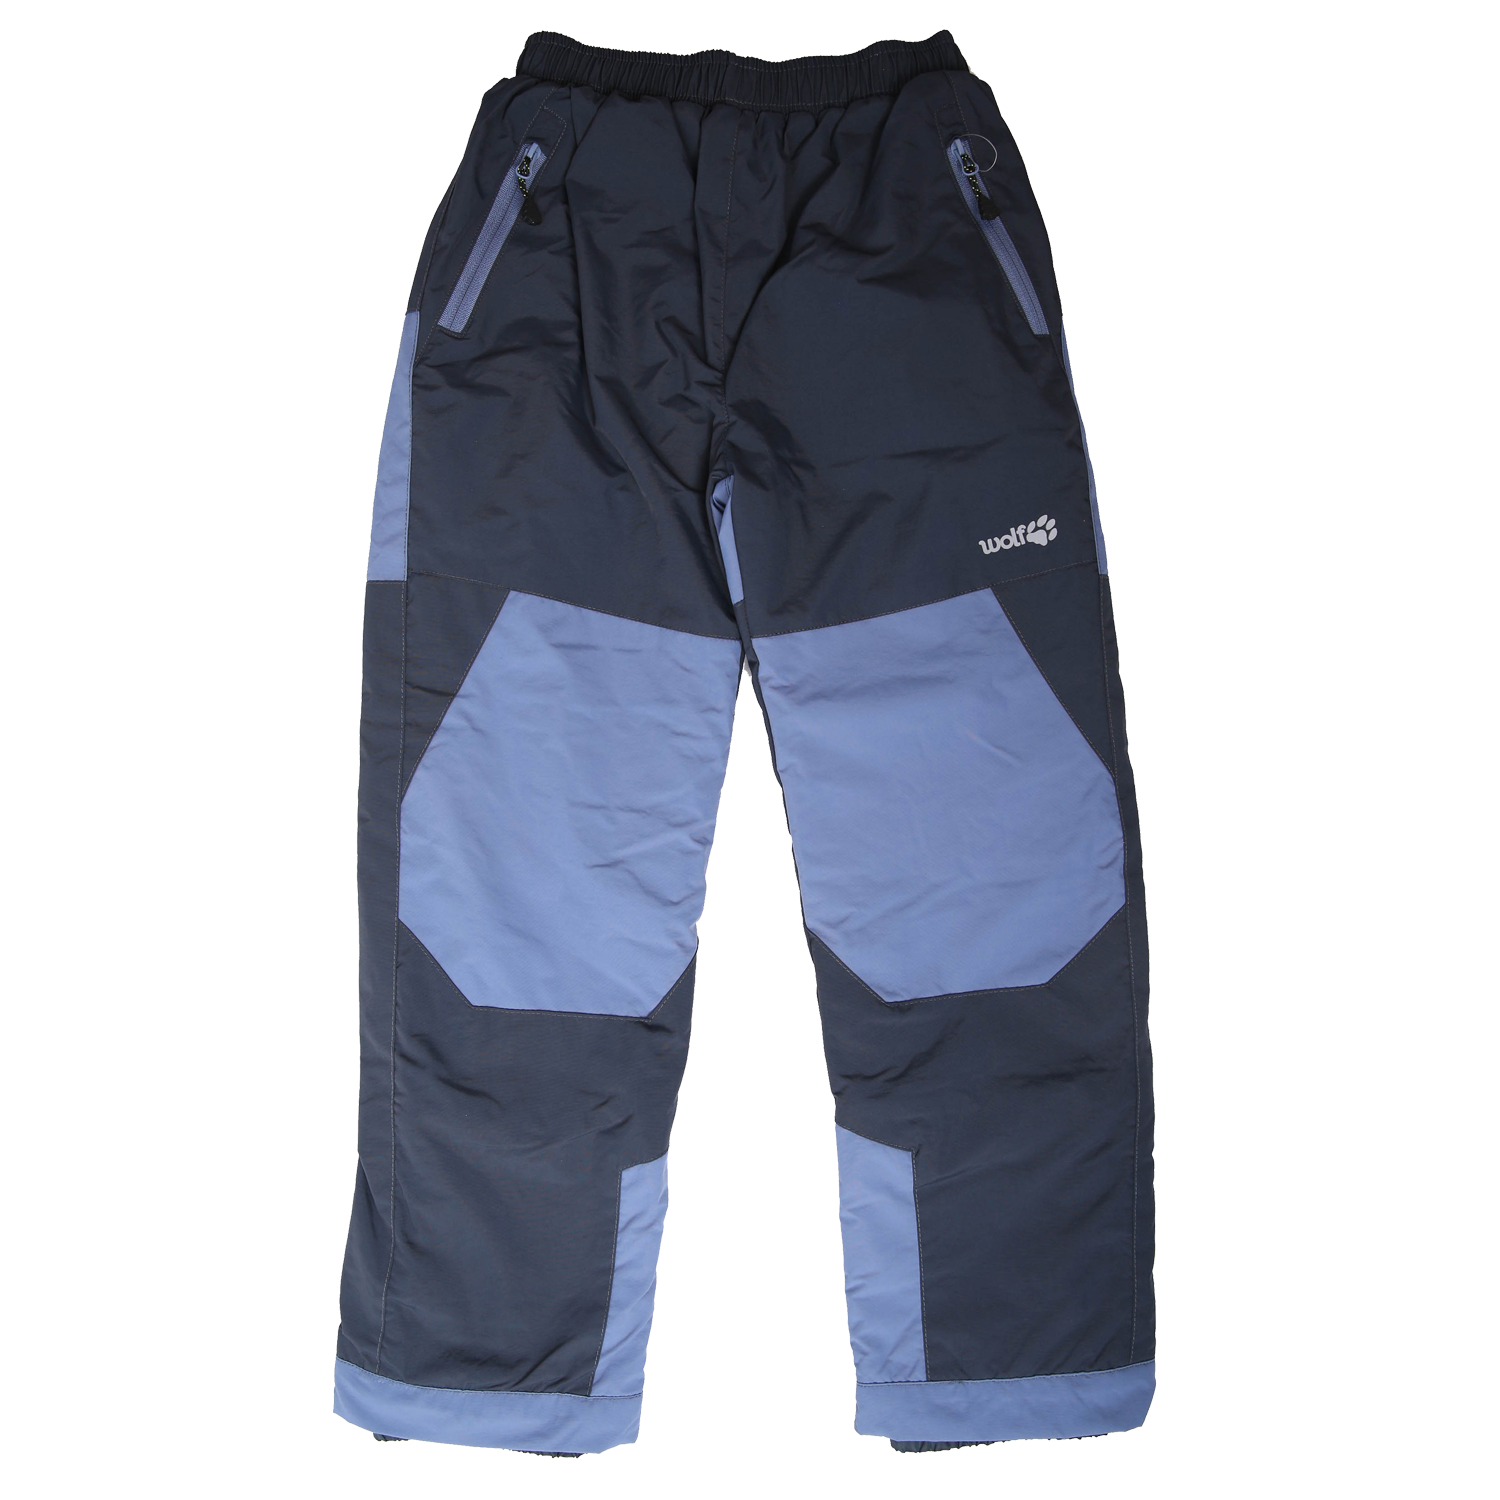 Chlapecké šusťákové kalhoty, zateplené - Wolf B2172, tmavě šedá Barva: Šedá tmavě, Velikost: 98